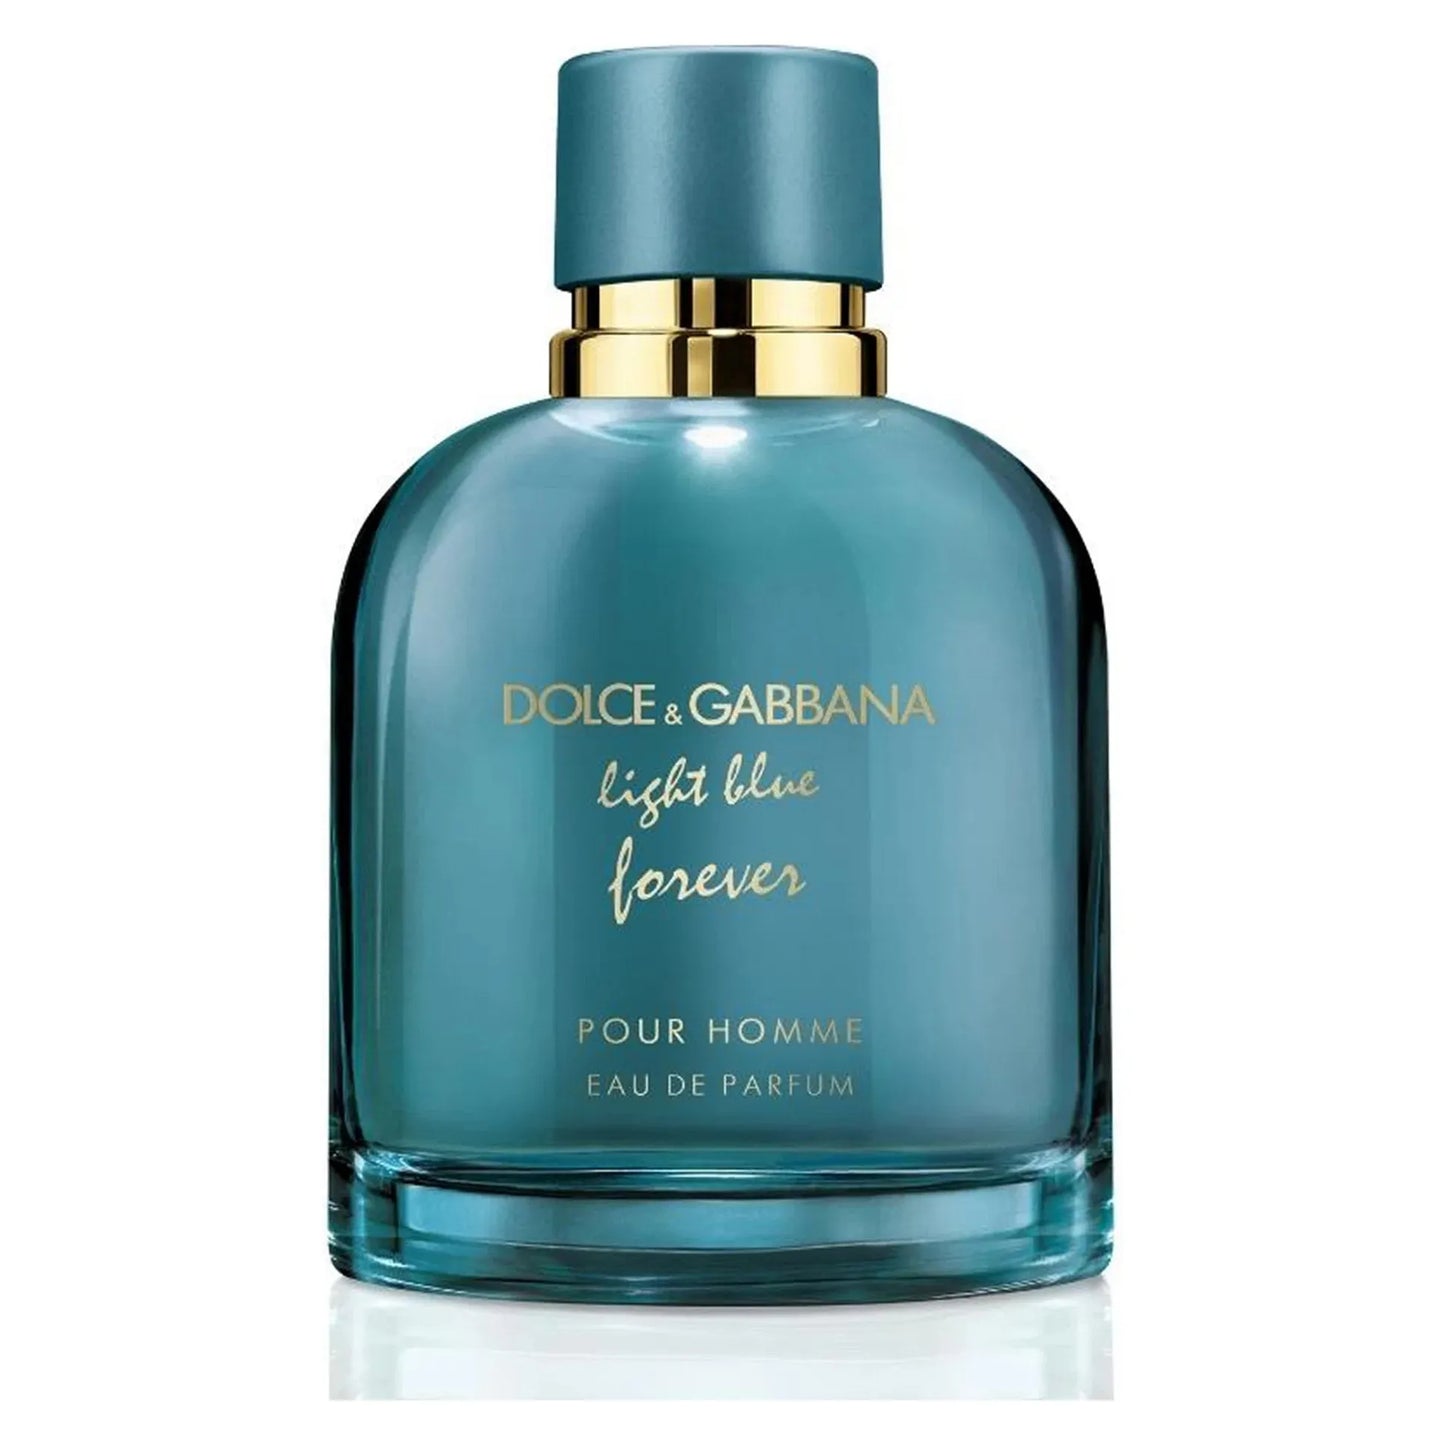 dolce & gabbana light blue forever pour homme eau de parfum sample/decants ps